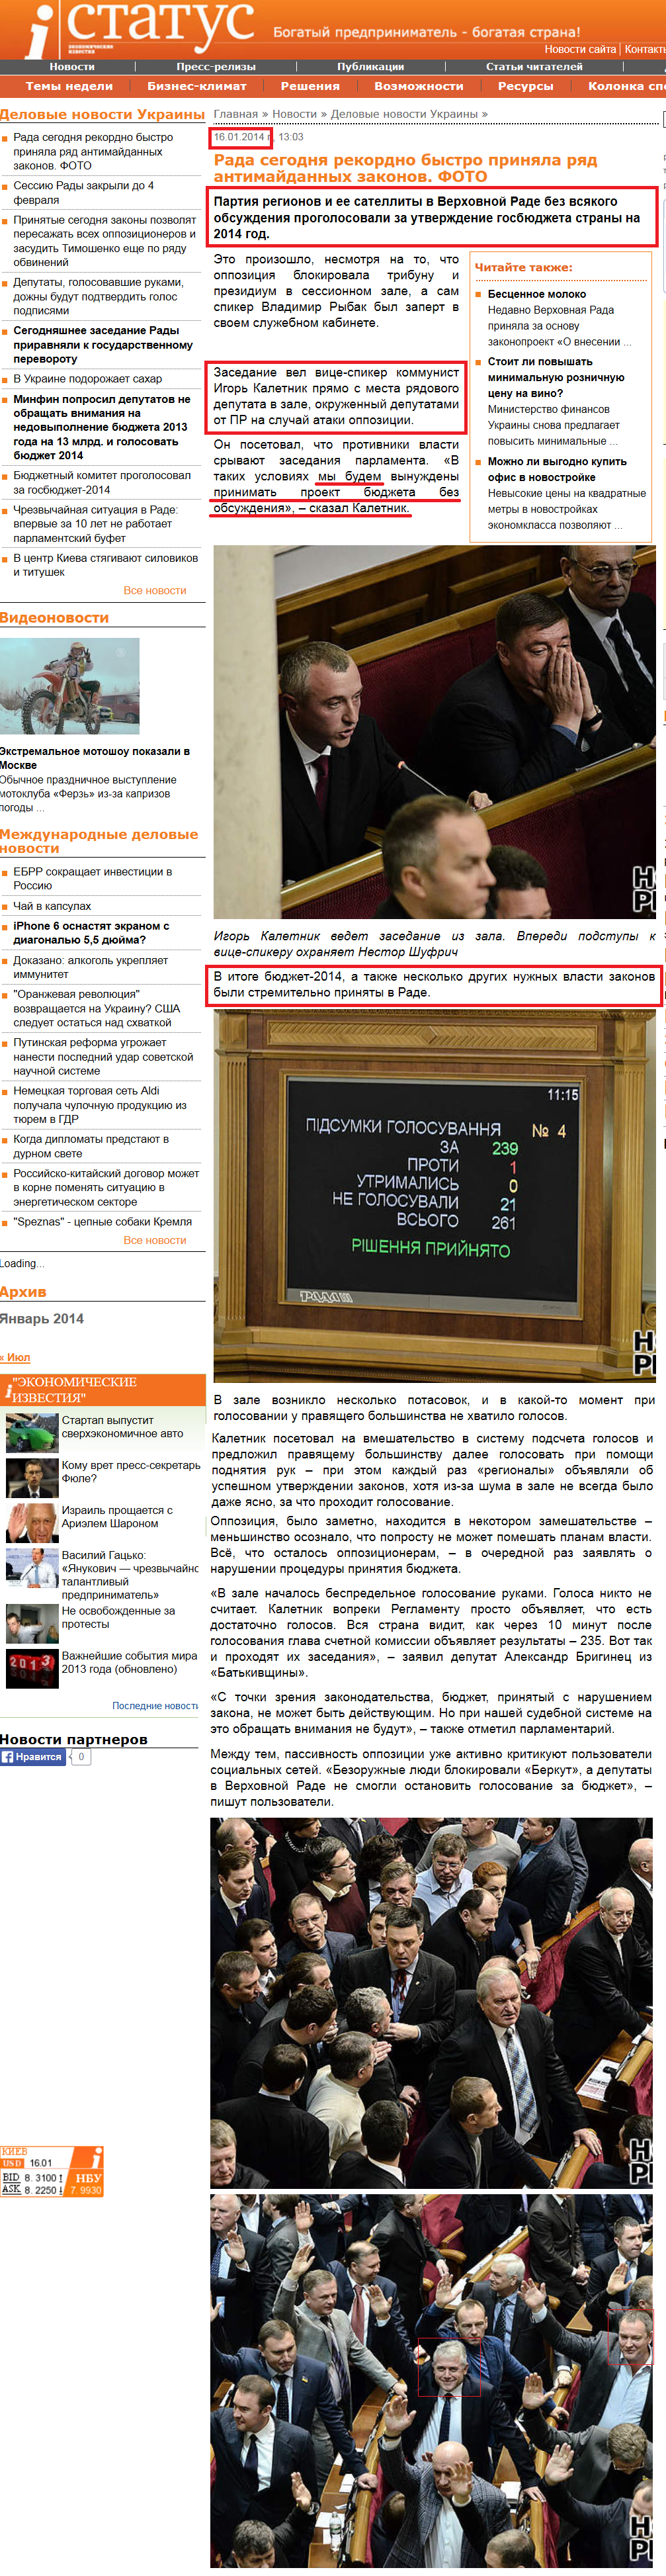 http://statuspress.com.ua/ukrainian-news/rada-segodnya-rekordno-bystro-prinyala-ryad-antimajdannyx-zakonov-foto.html